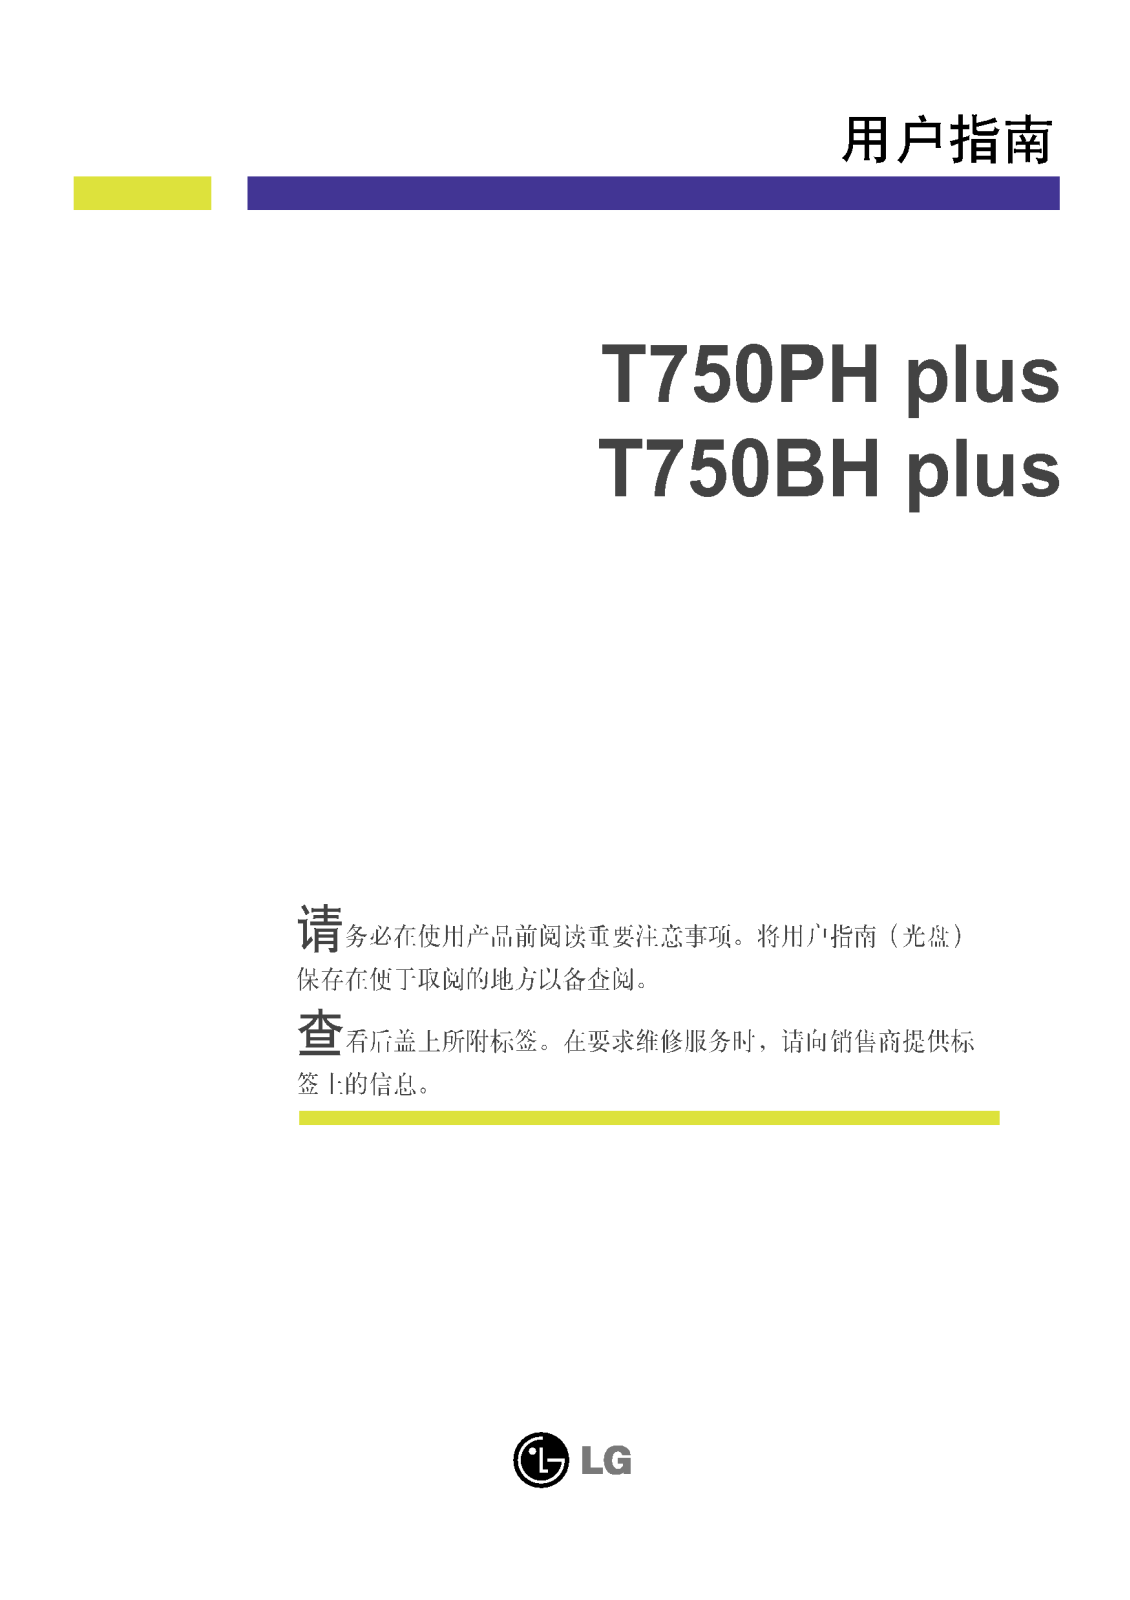 LG T750BHPAK Product Manual